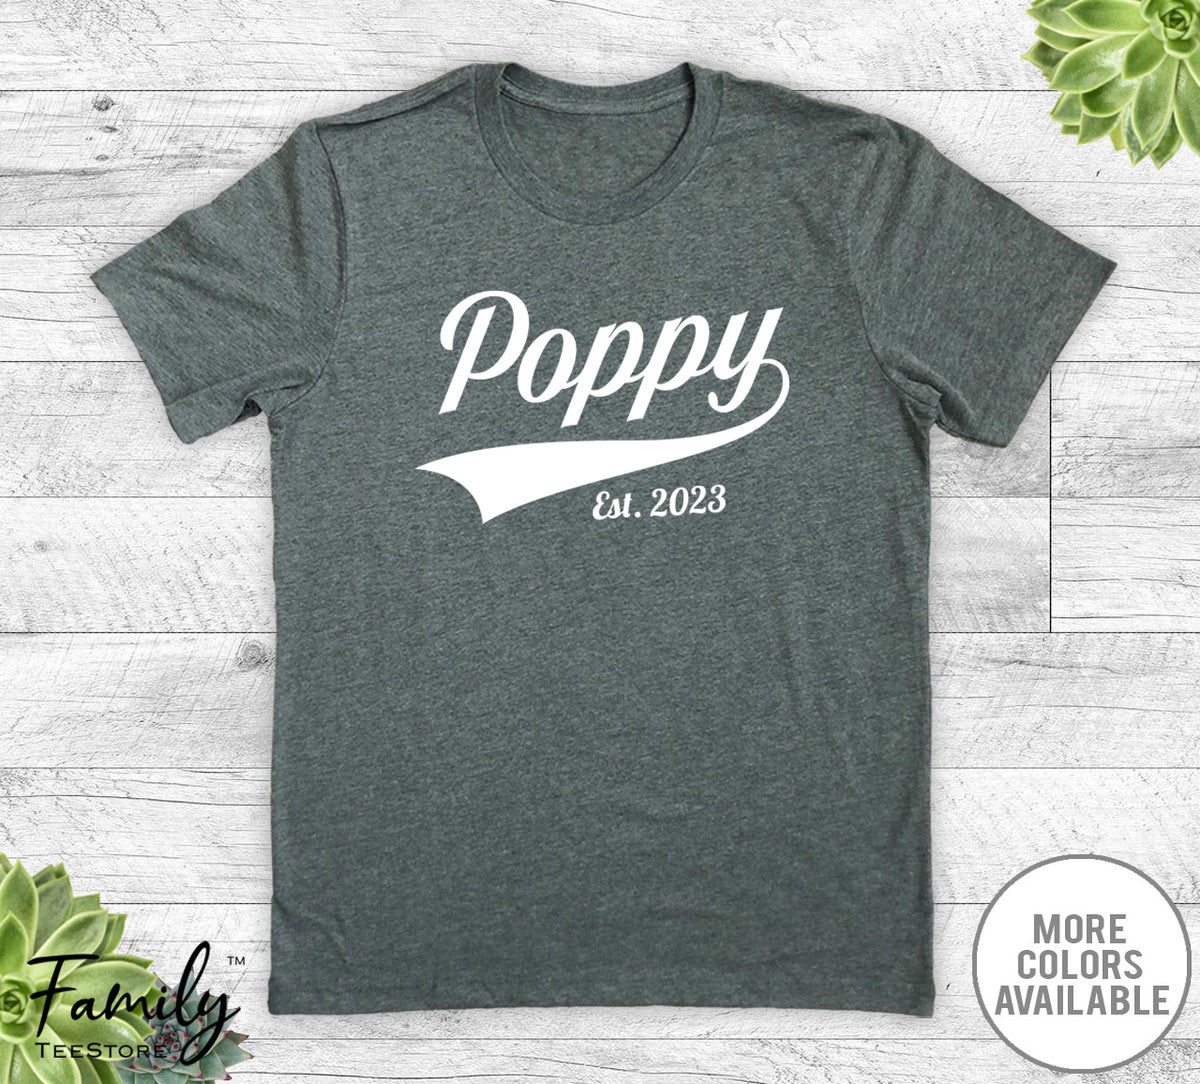 Poppy Est. 2023 - Unisex T-shirt - New Poppy Shirt - Poppy To Be Gift